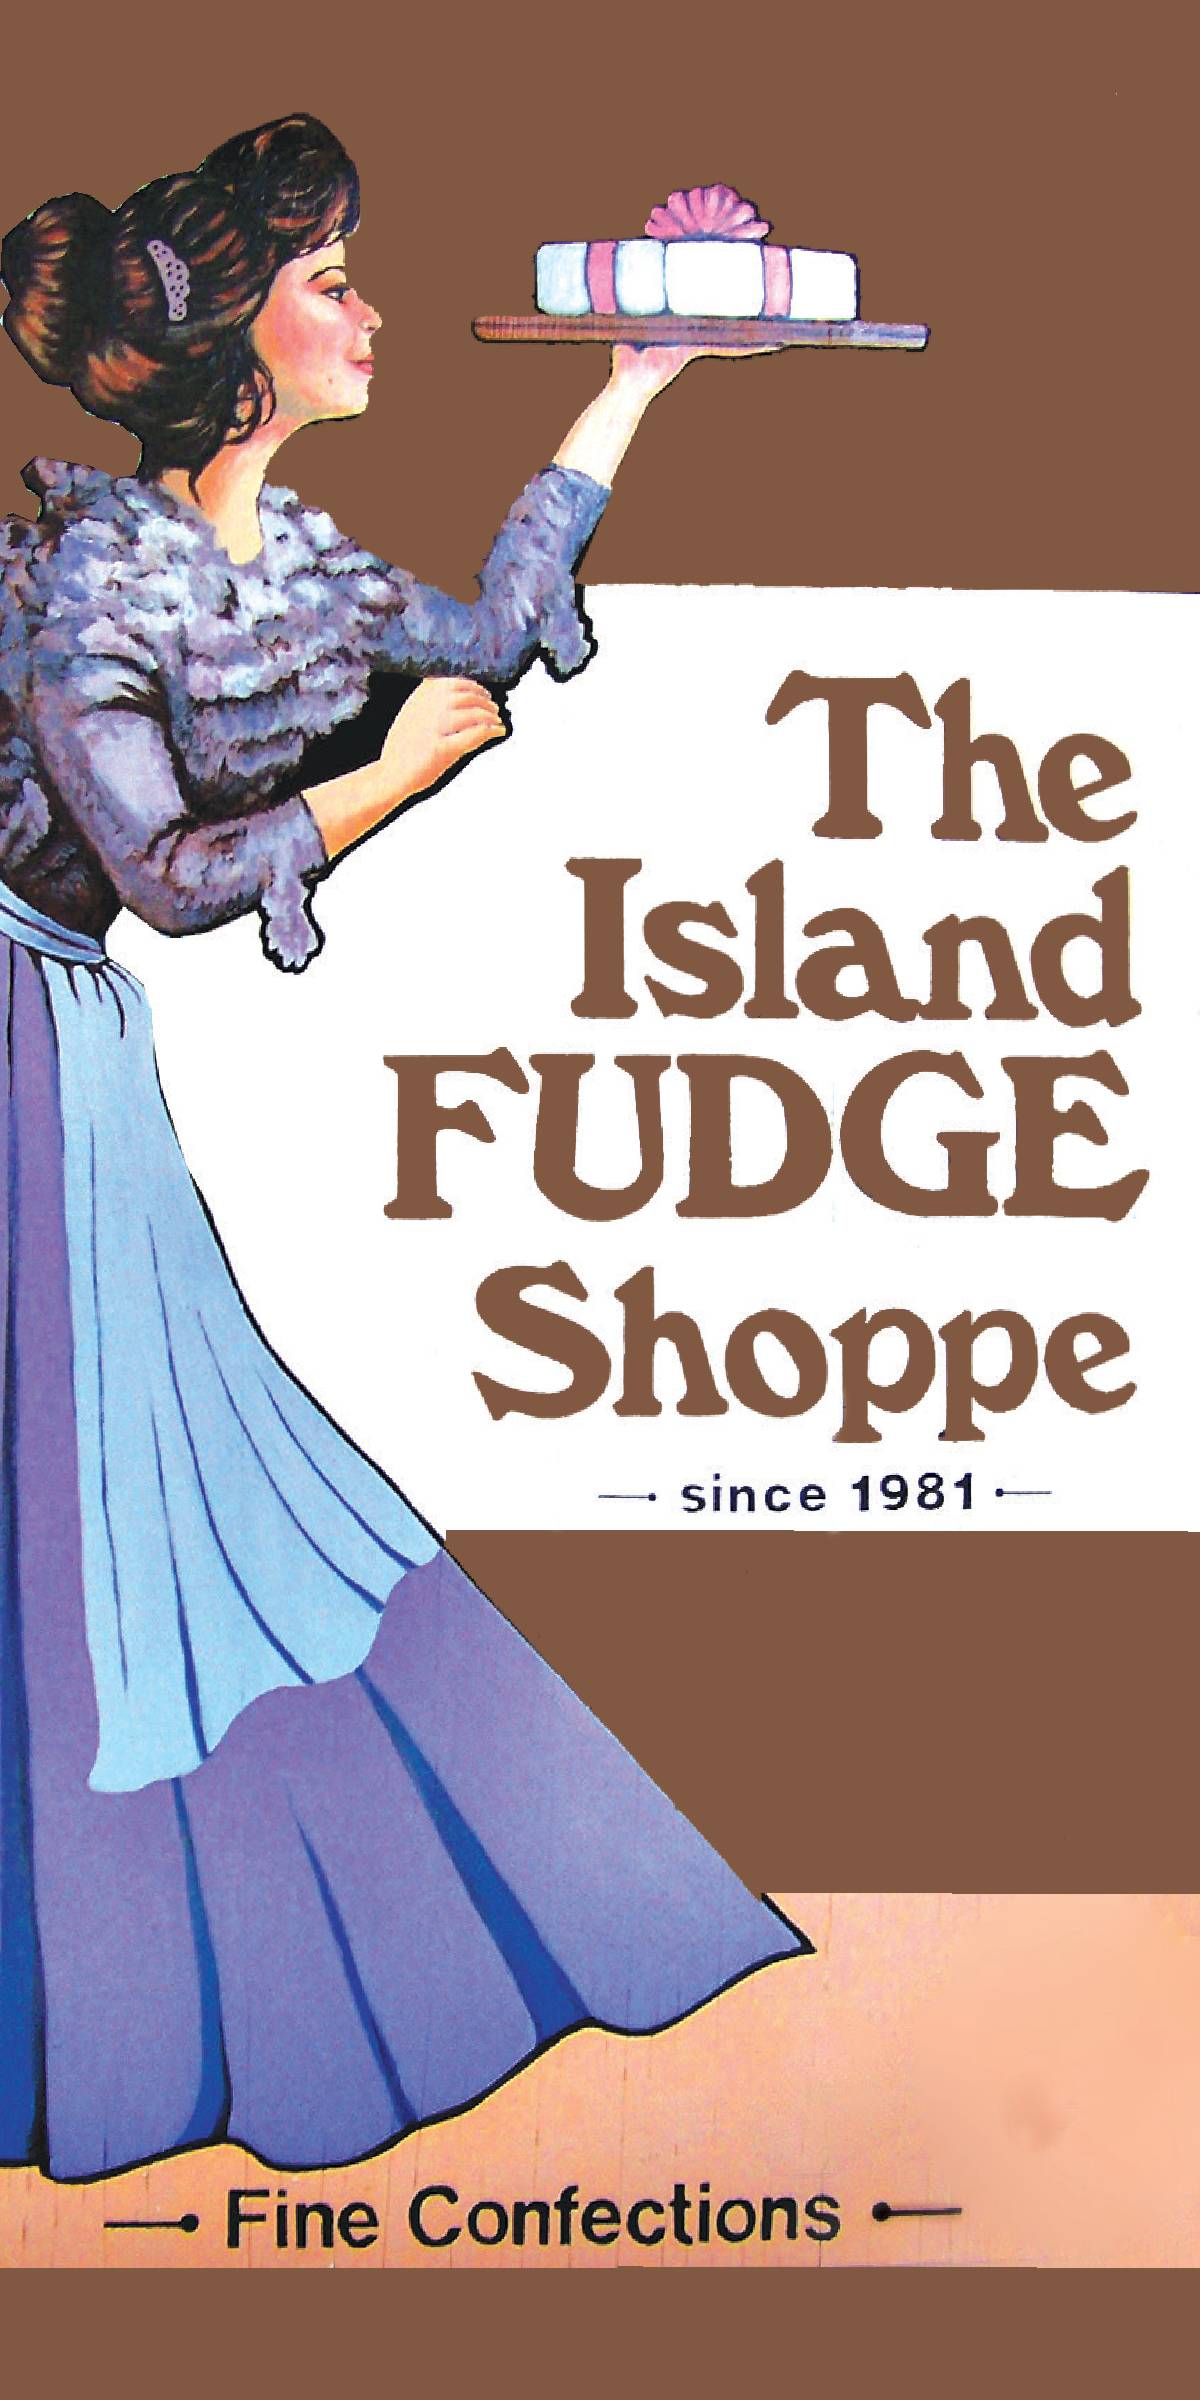 The Island Fudge Shoppe